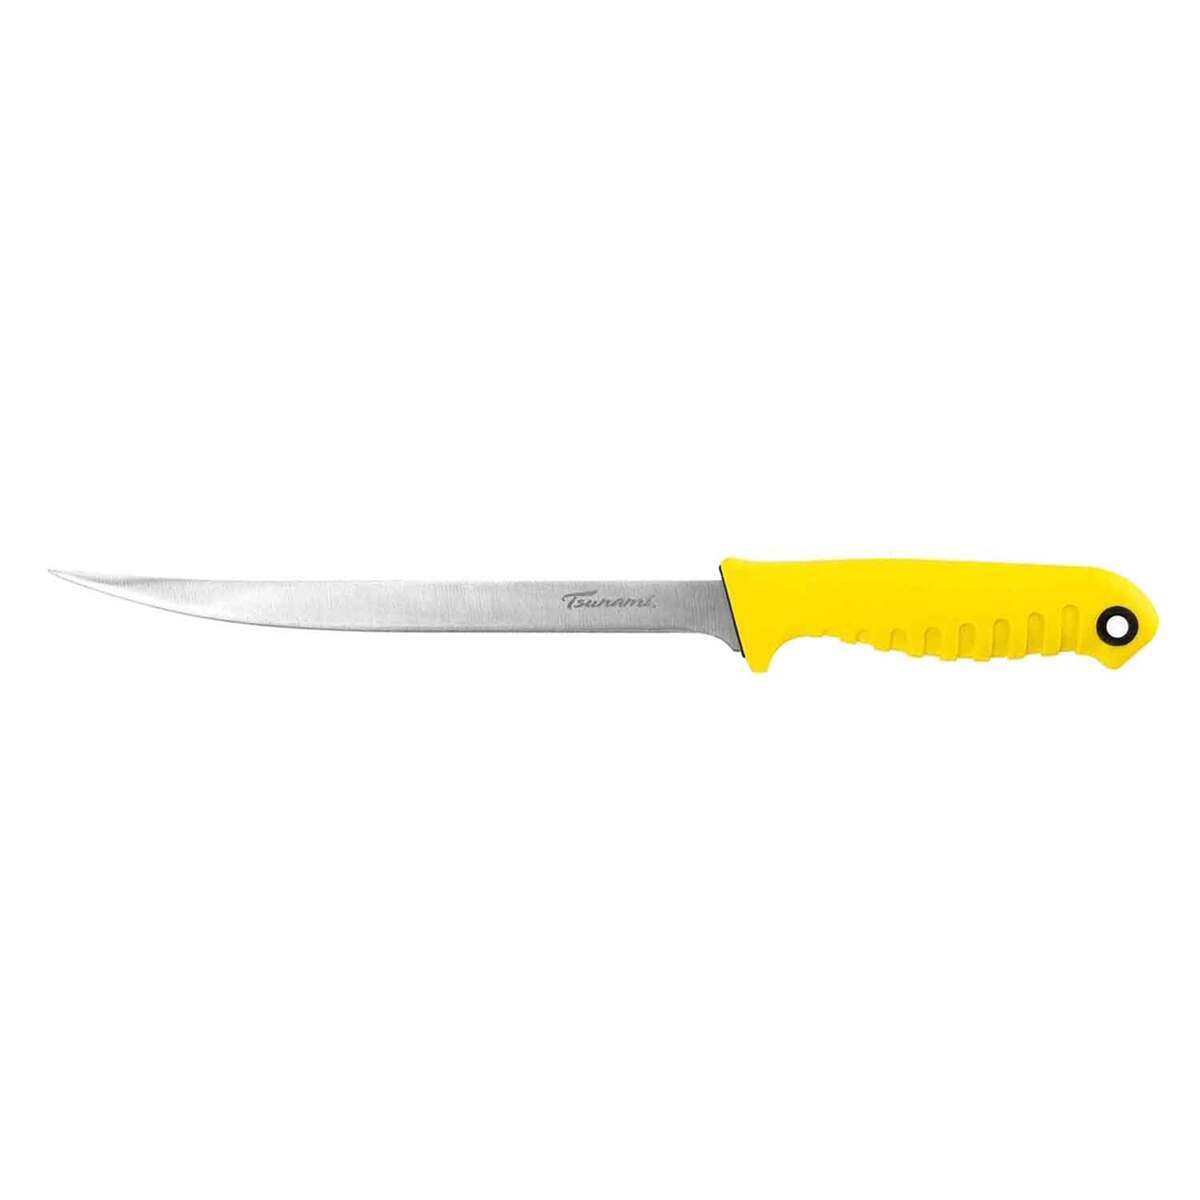 Fillet Knife - Satlwater Grade